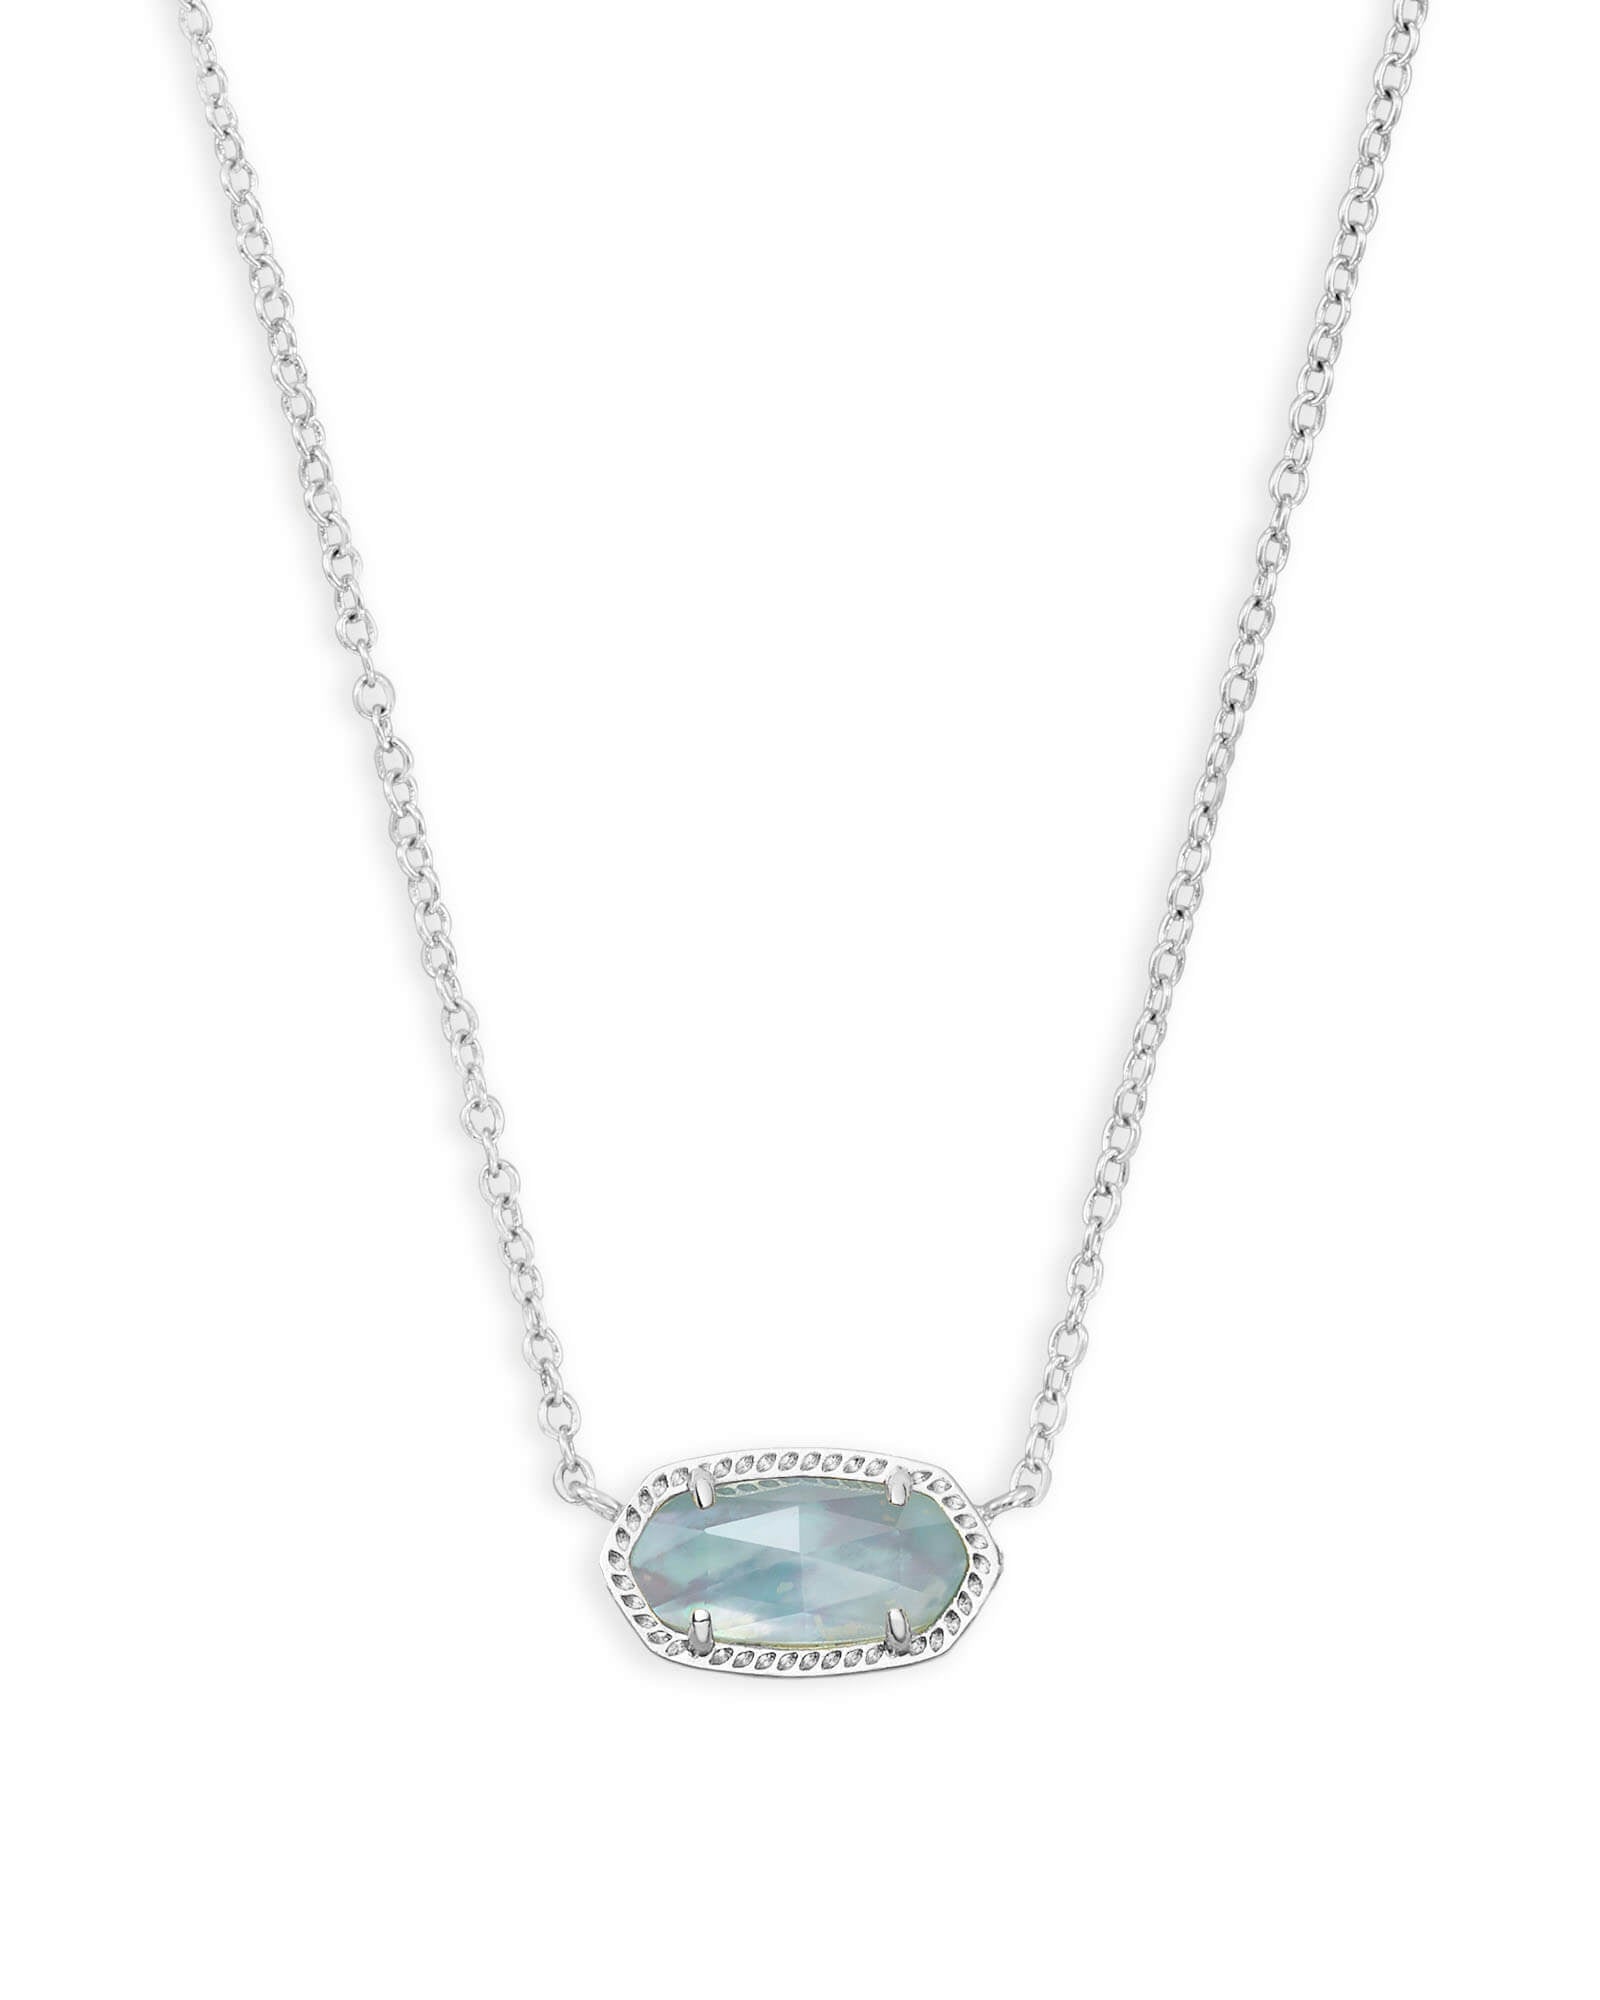 Elis Silver Pendant Necklace - Light Blue Illusion Front View